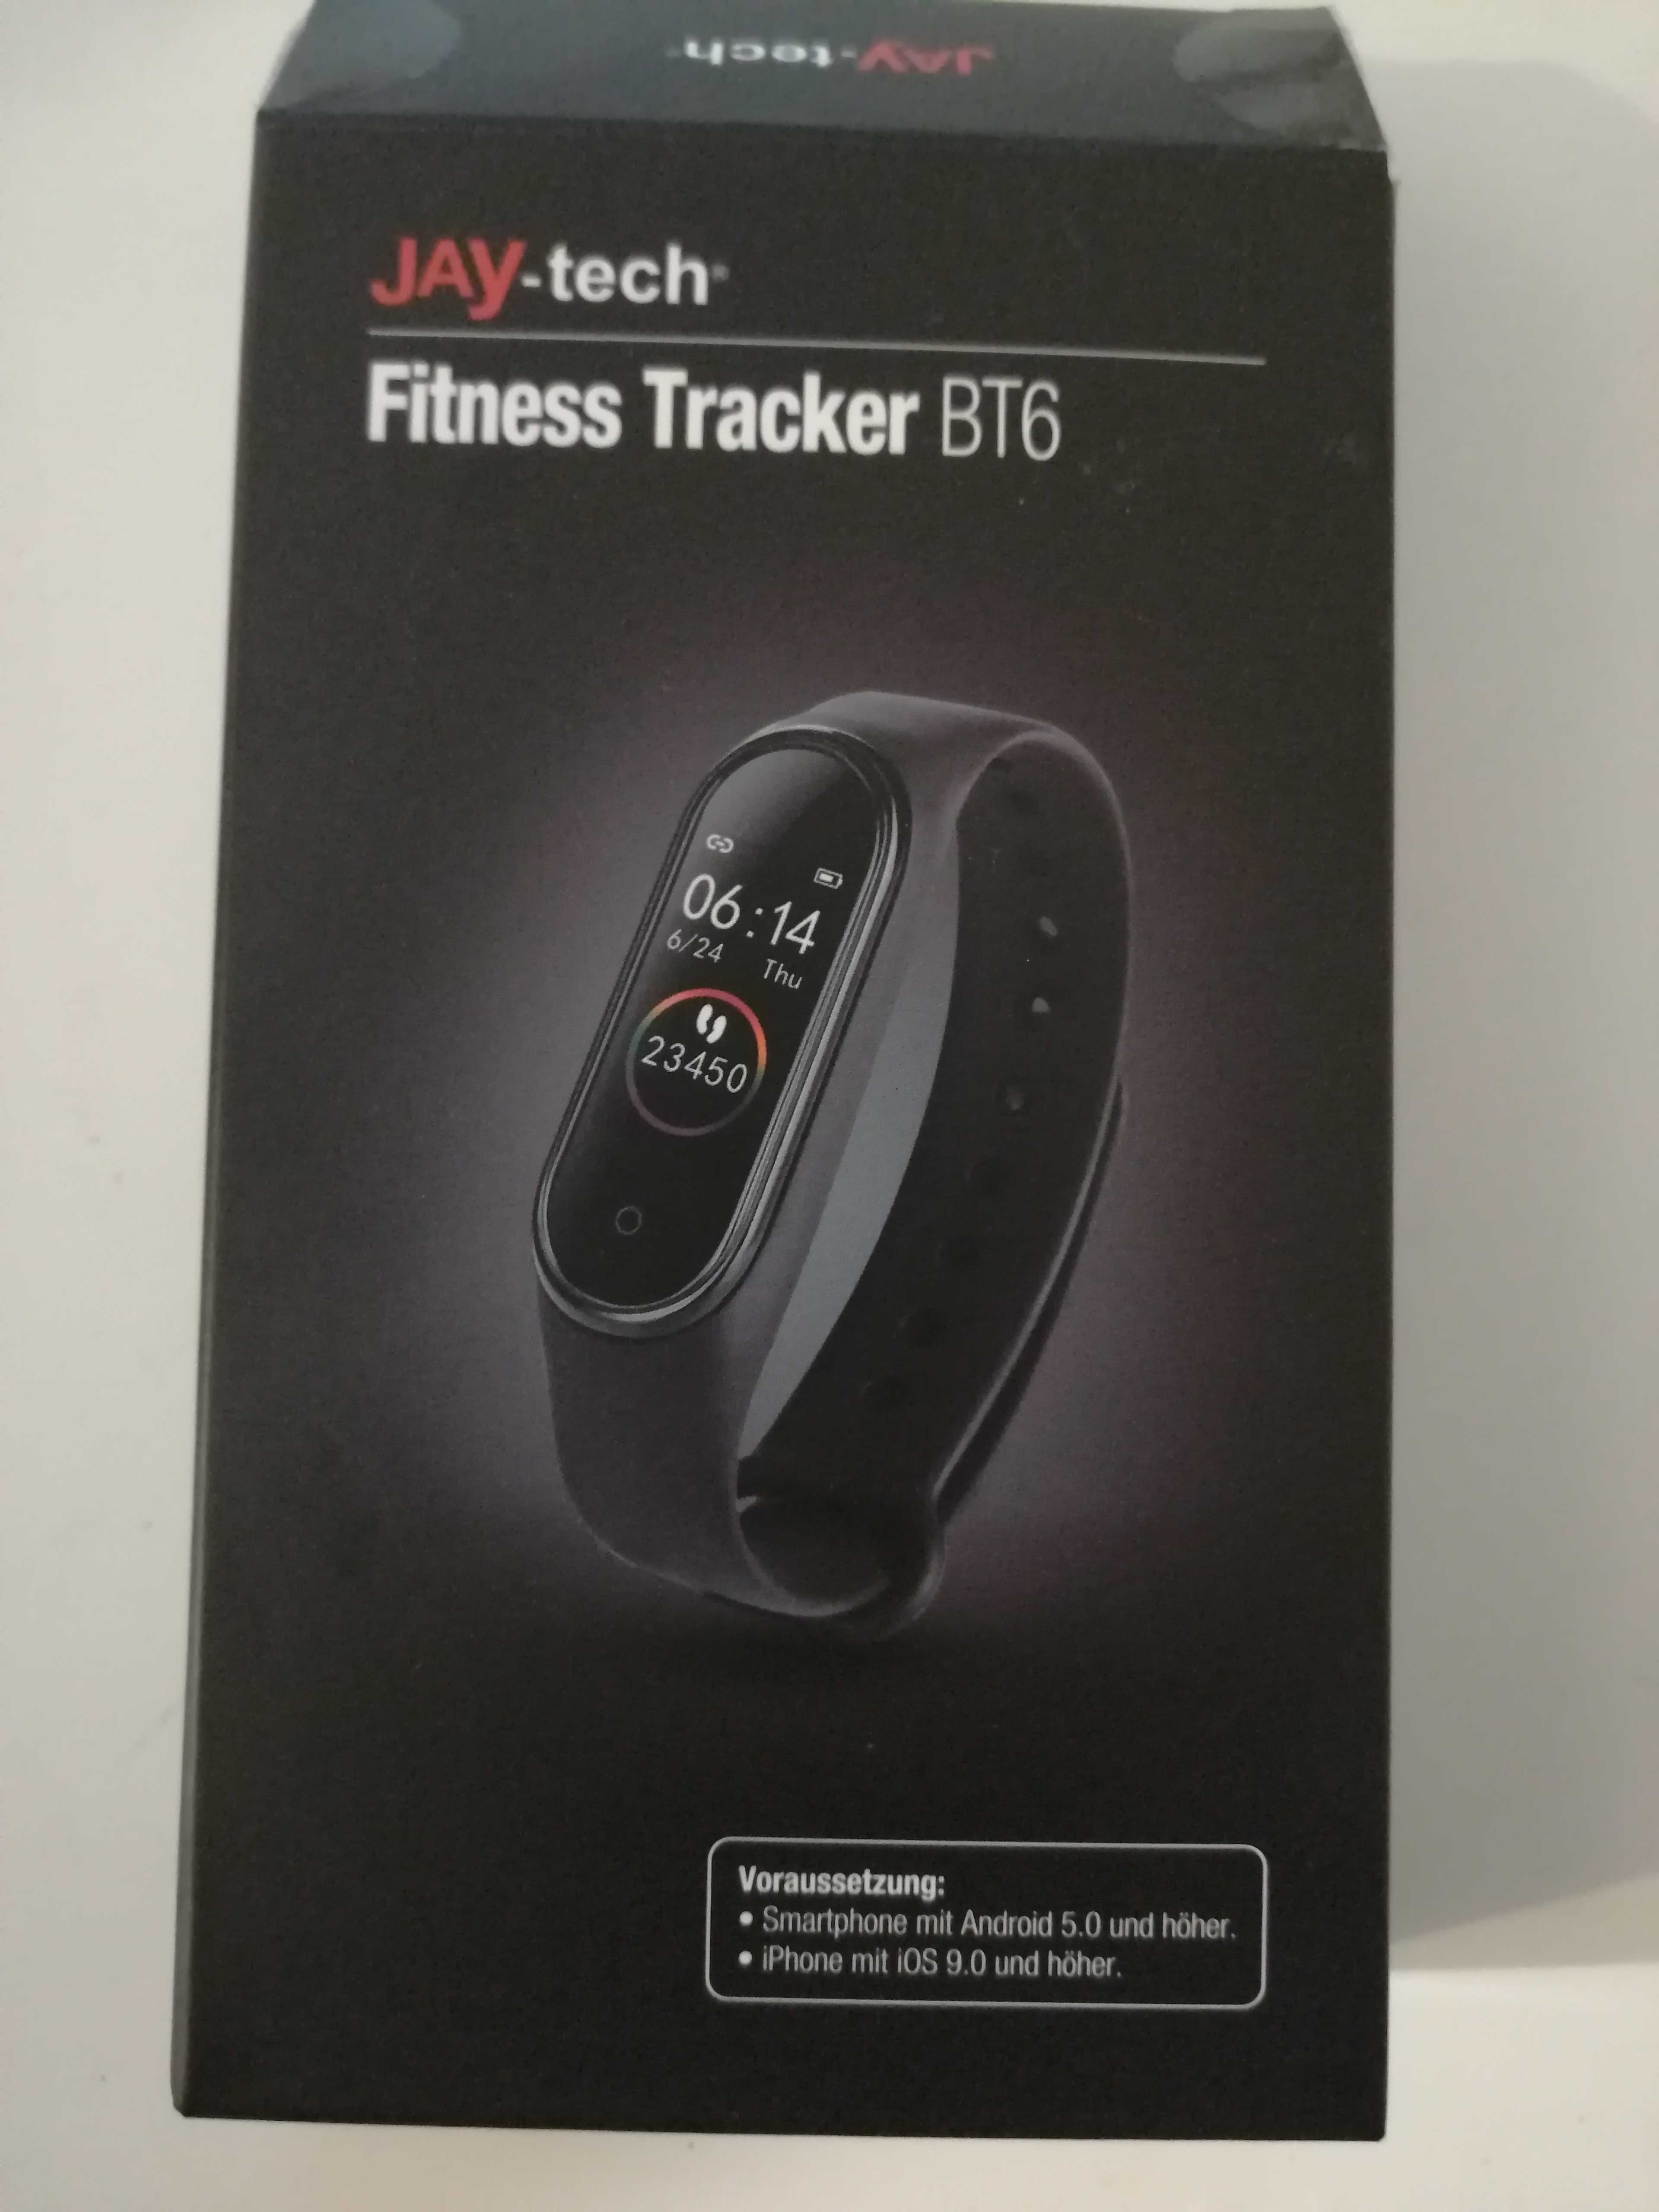 Fitnes tracker firmy JAY-tech BT6